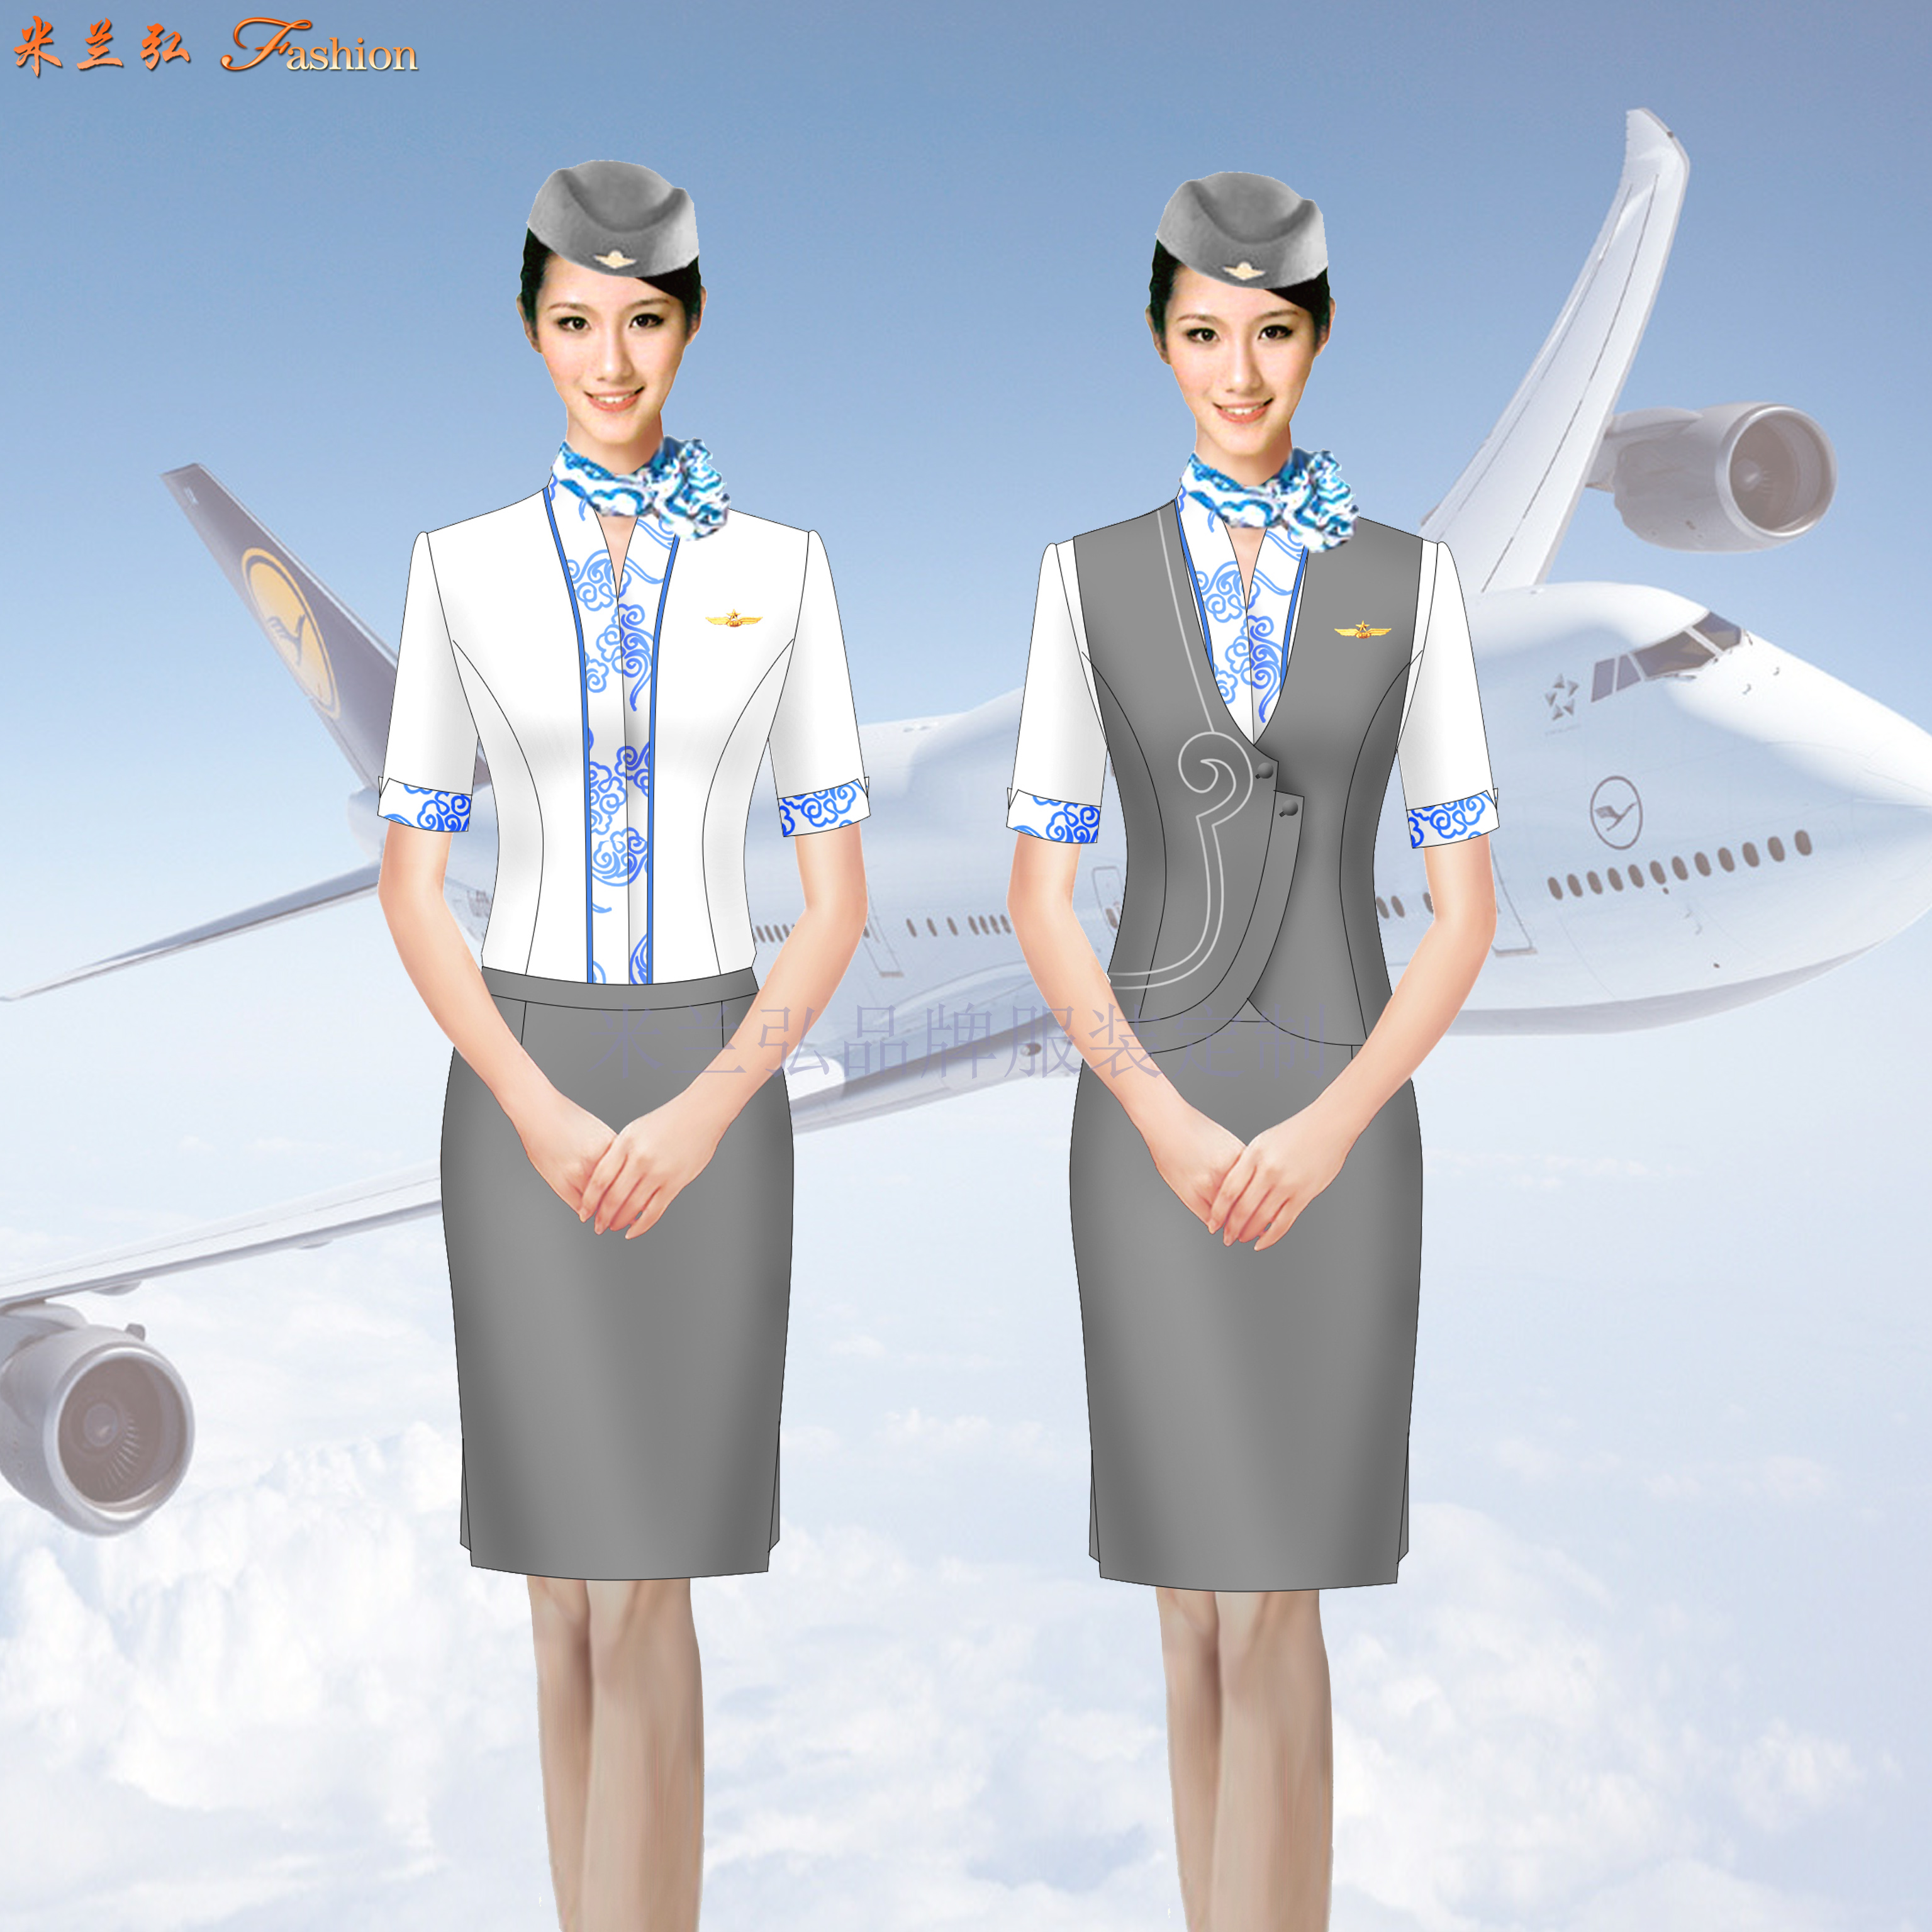 空乘职业装-定做空姐职业装女装套装-米兰弘服装-3